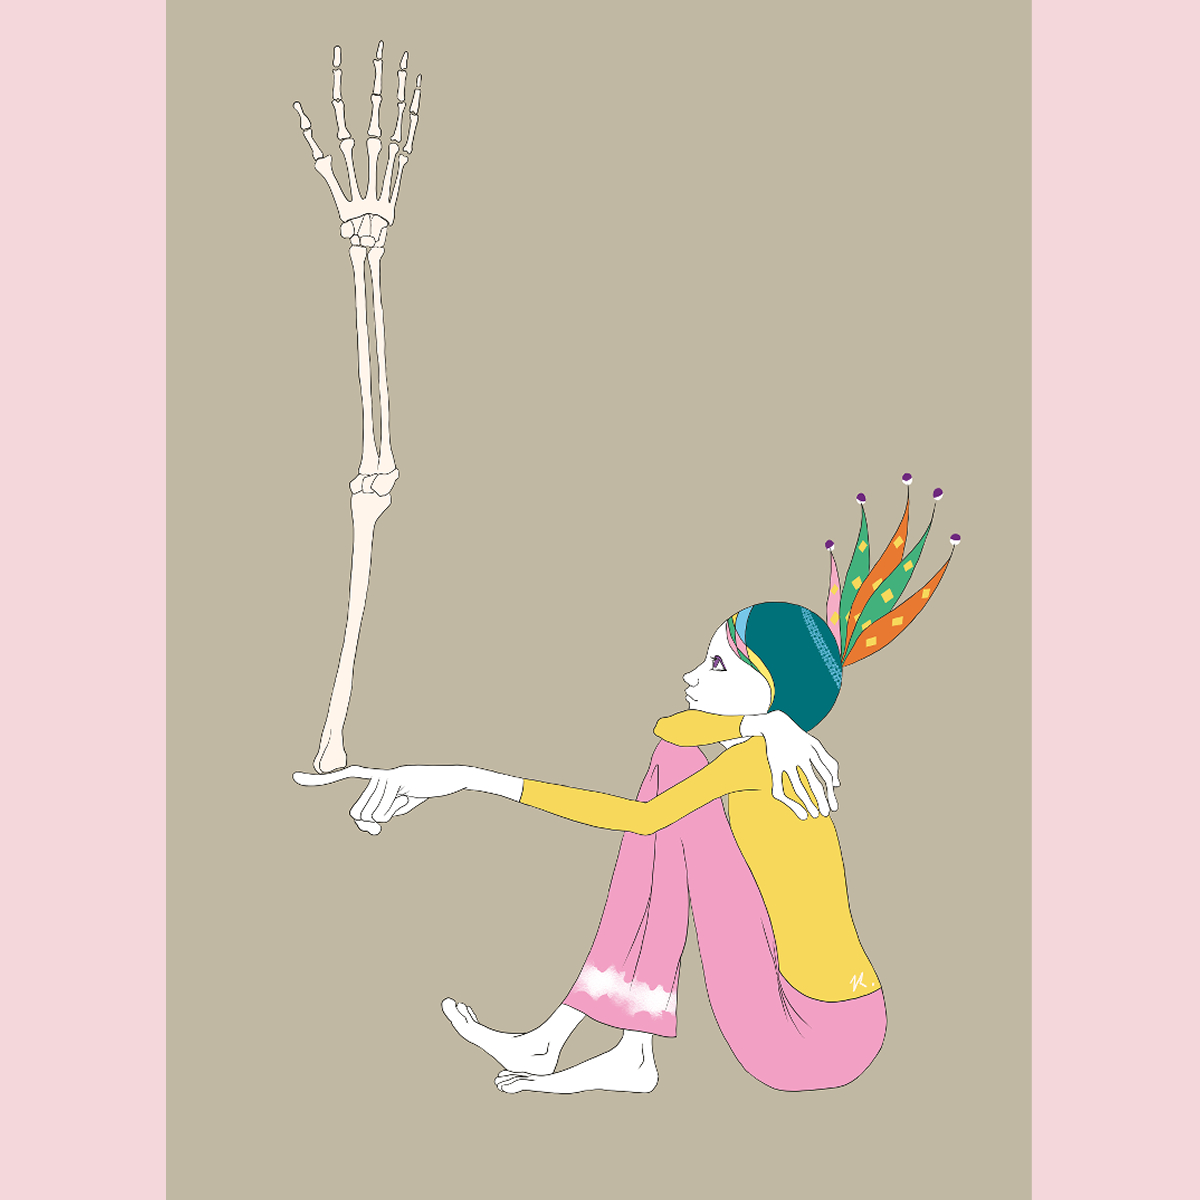 「自由上肢骨の精

フワフワのフワ～ 」|naopu71_art_jpのイラスト